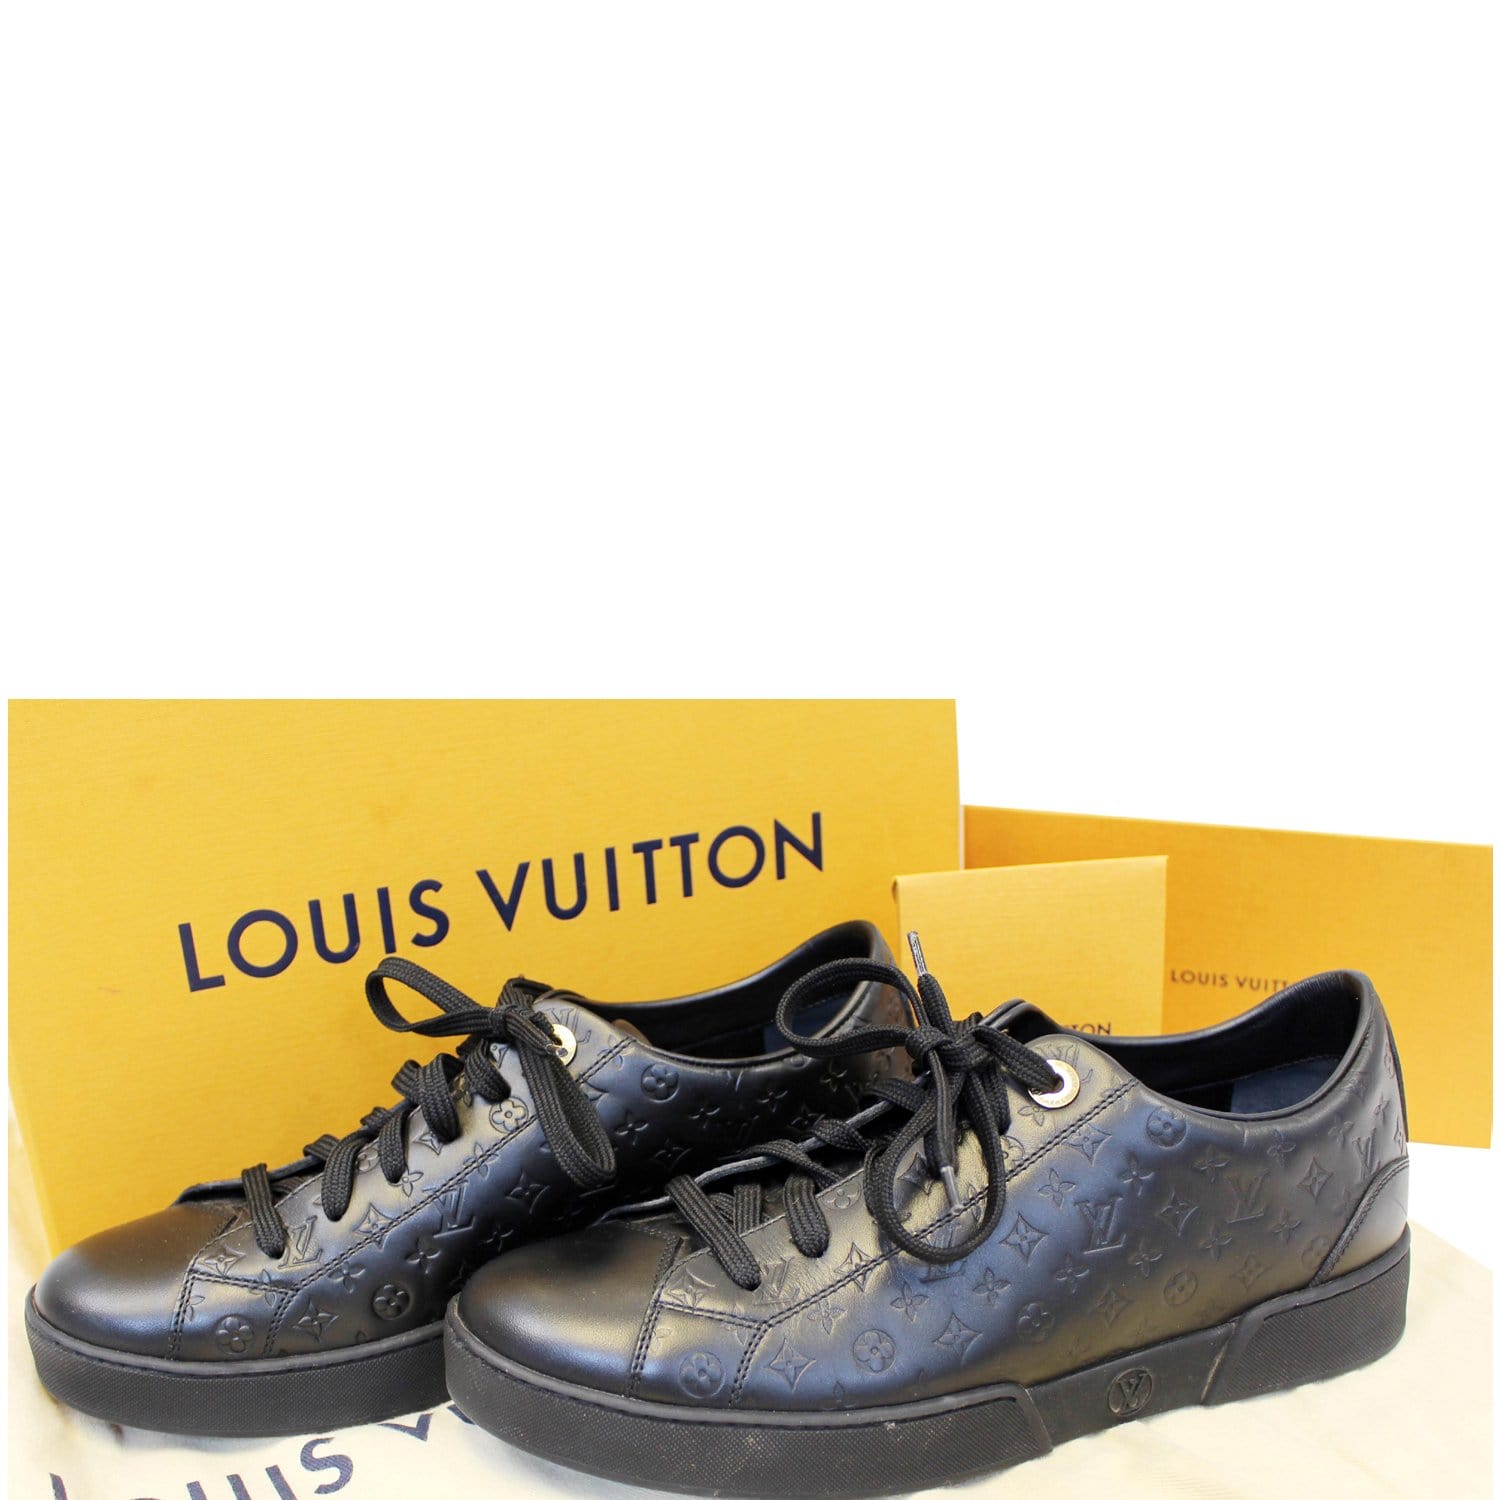 Louis Vuitton mở rộng dòng Since 1854 với các mẫu túi denim xanh biển